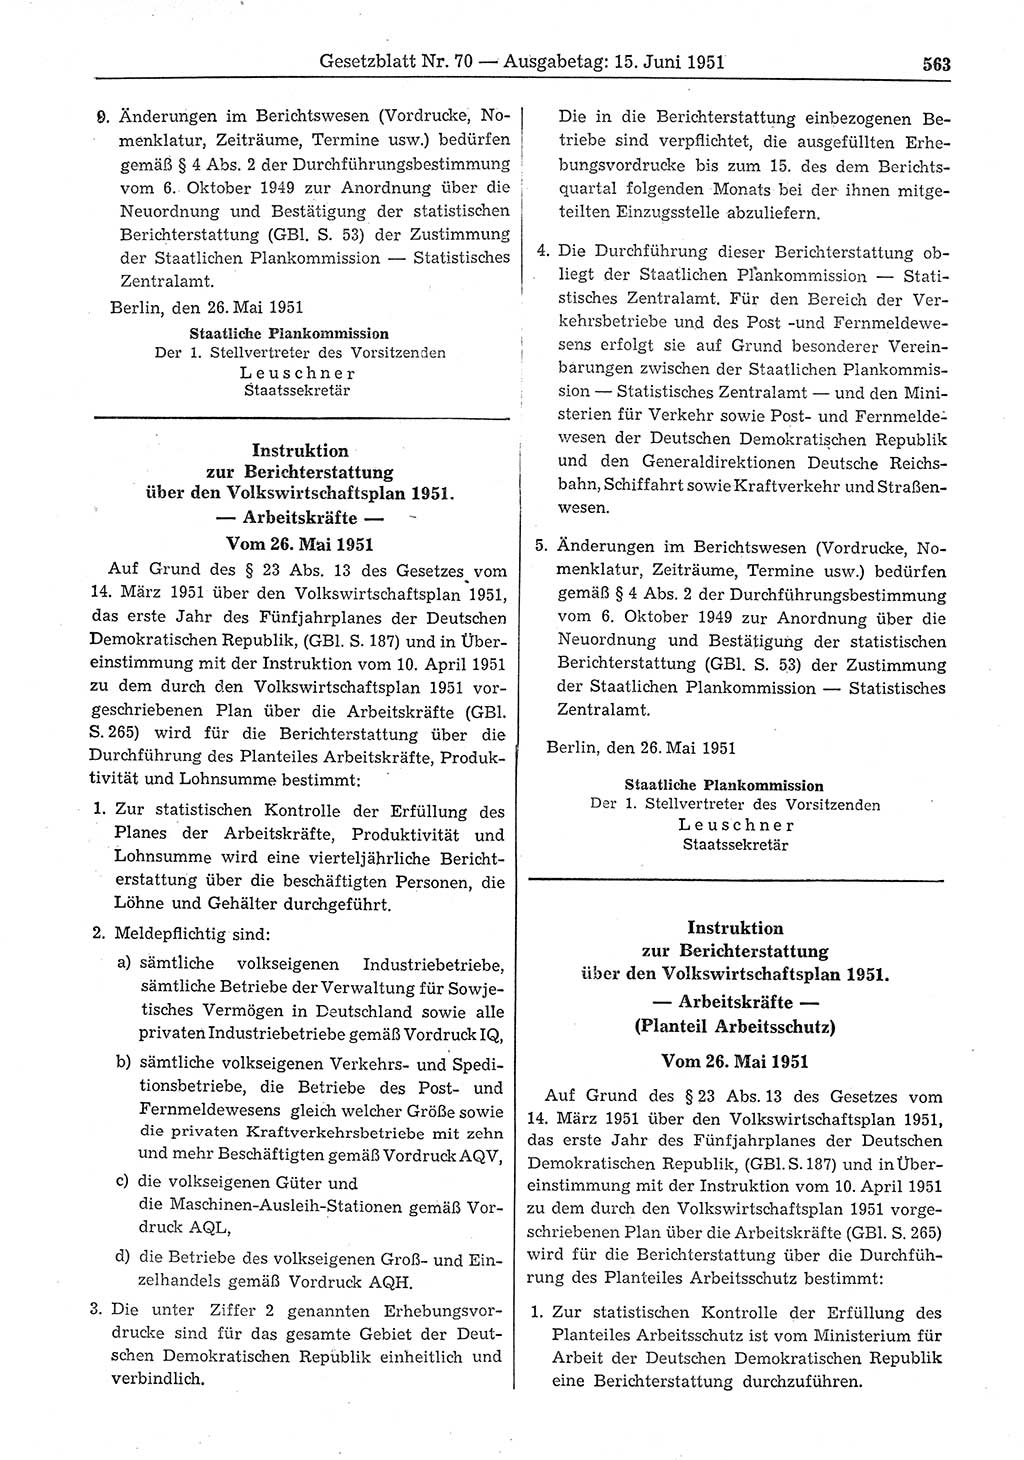 Gesetzblatt (GBl.) der Deutschen Demokratischen Republik (DDR) 1951, Seite 563 (GBl. DDR 1951, S. 563)